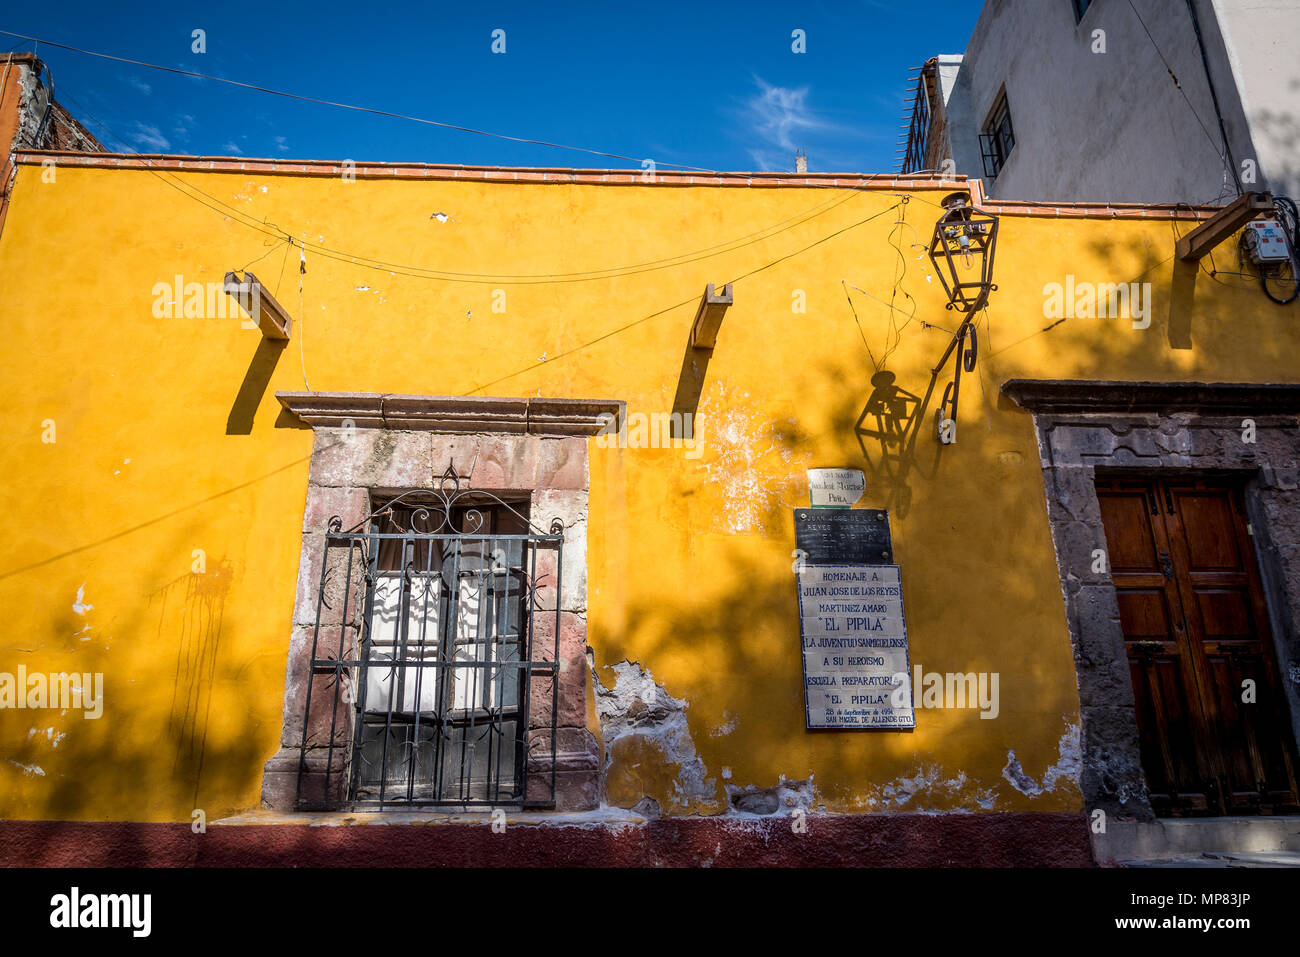 House in which the local hero 'El Pipila' was born, San Miguel de Allende, a colonial-era city,  Bajío region, Central Mexico Stock Photo